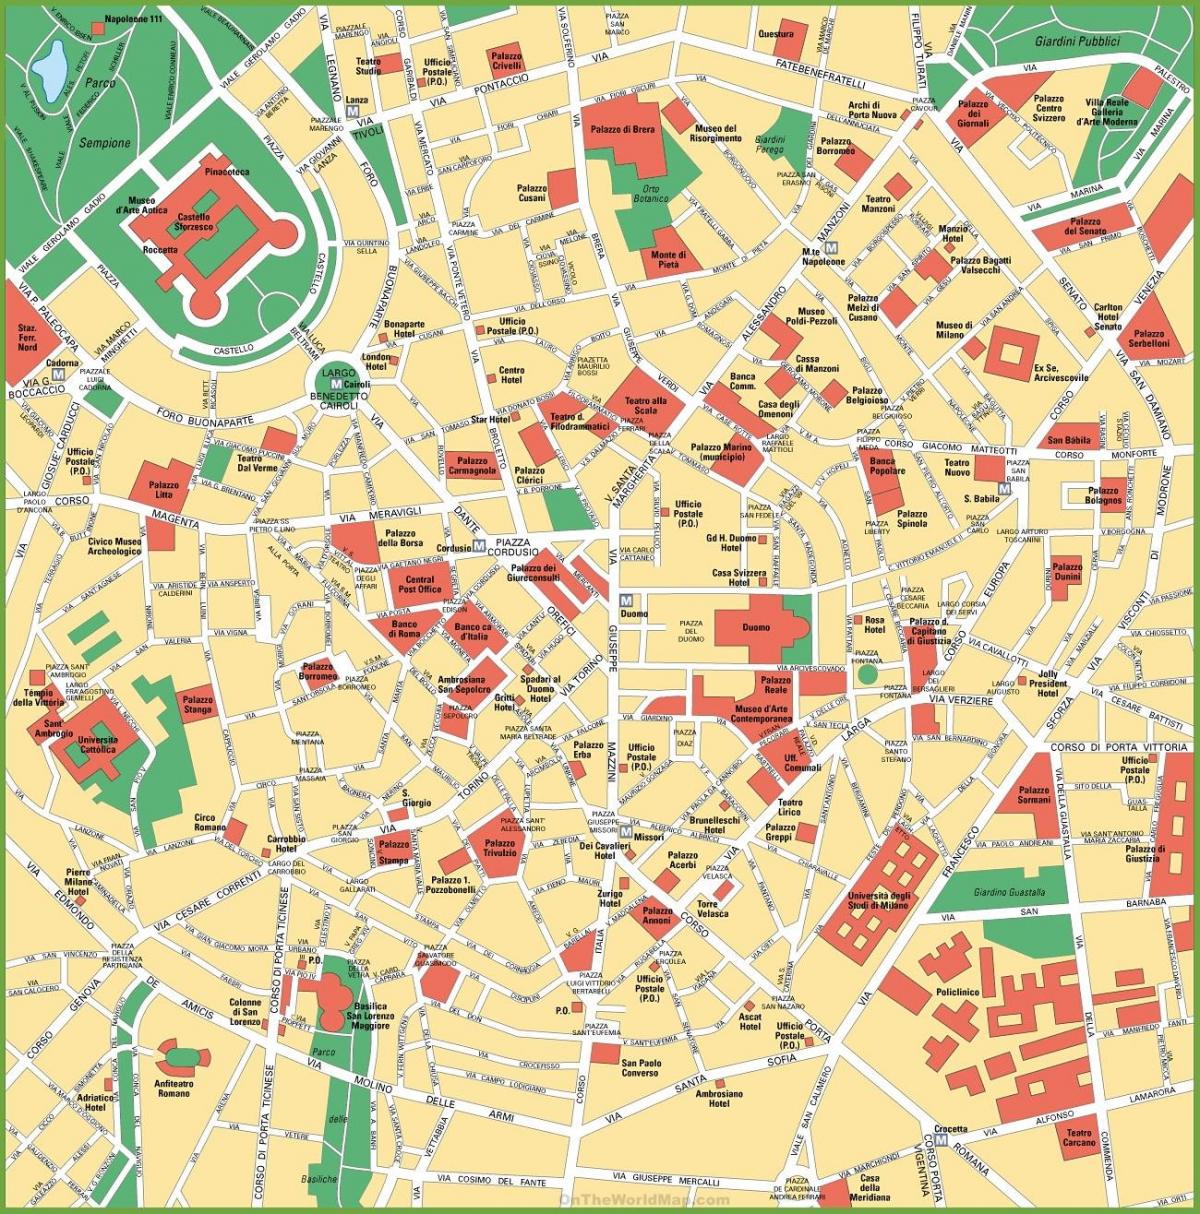 milano city center mapa